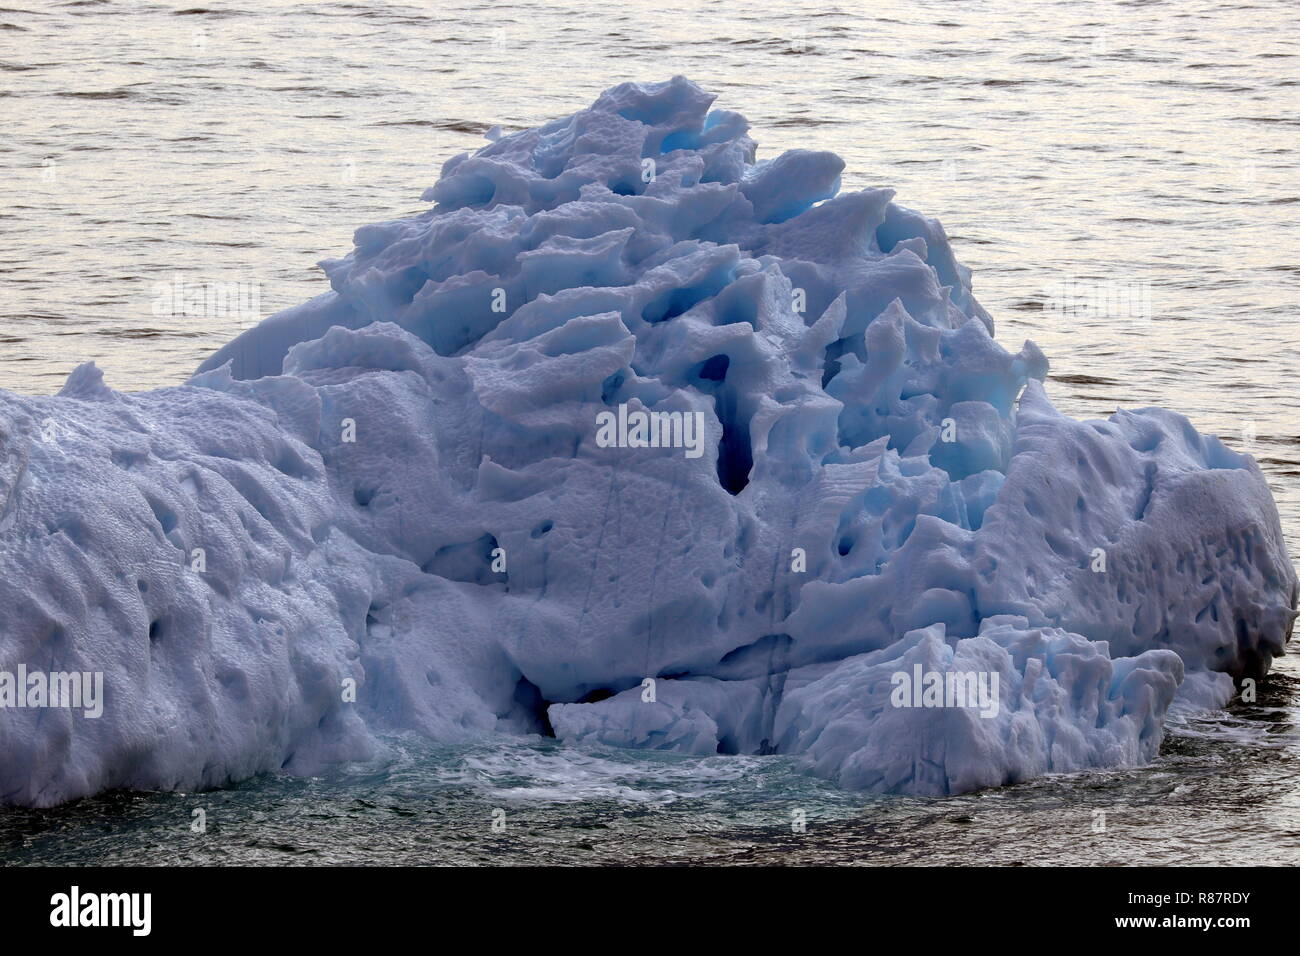 Grönland Disko Bucht: In diesen Eisberg haben Sonne und Wind schon ein paar Löcher gebohrt. Foto Stock